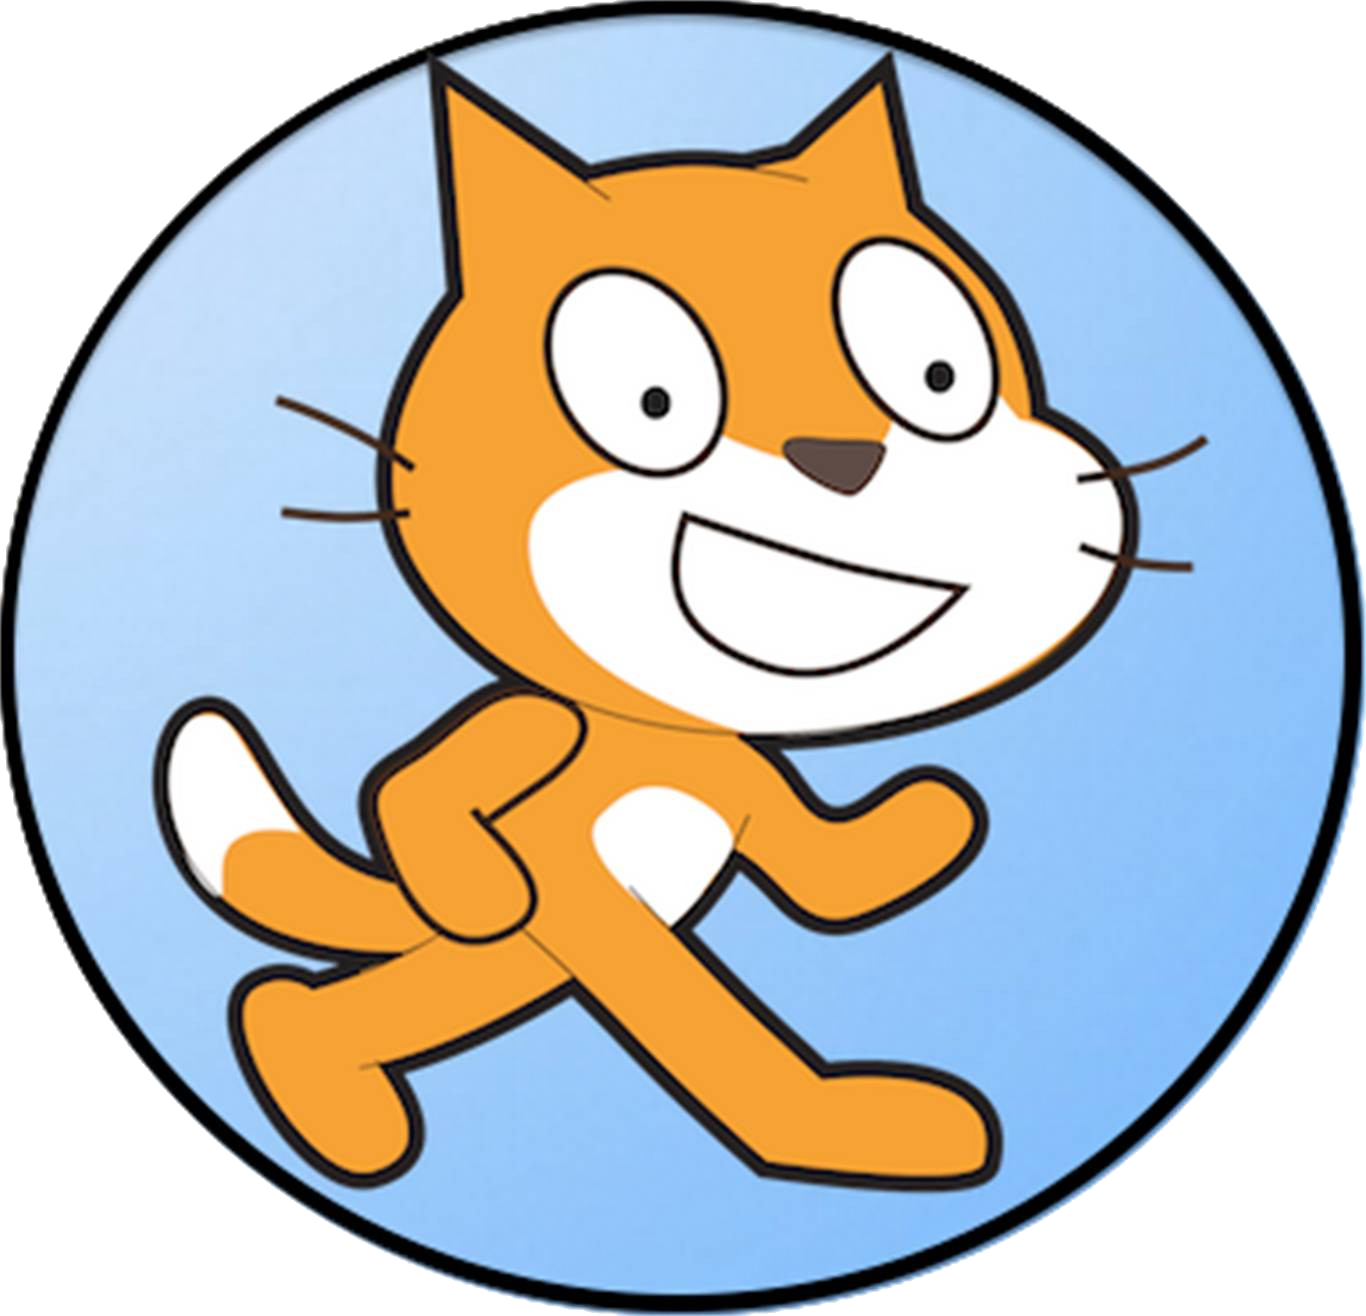 Скретч маленький. Скретч. Логотип Scratch. Скретч иконка. Scratch кот.